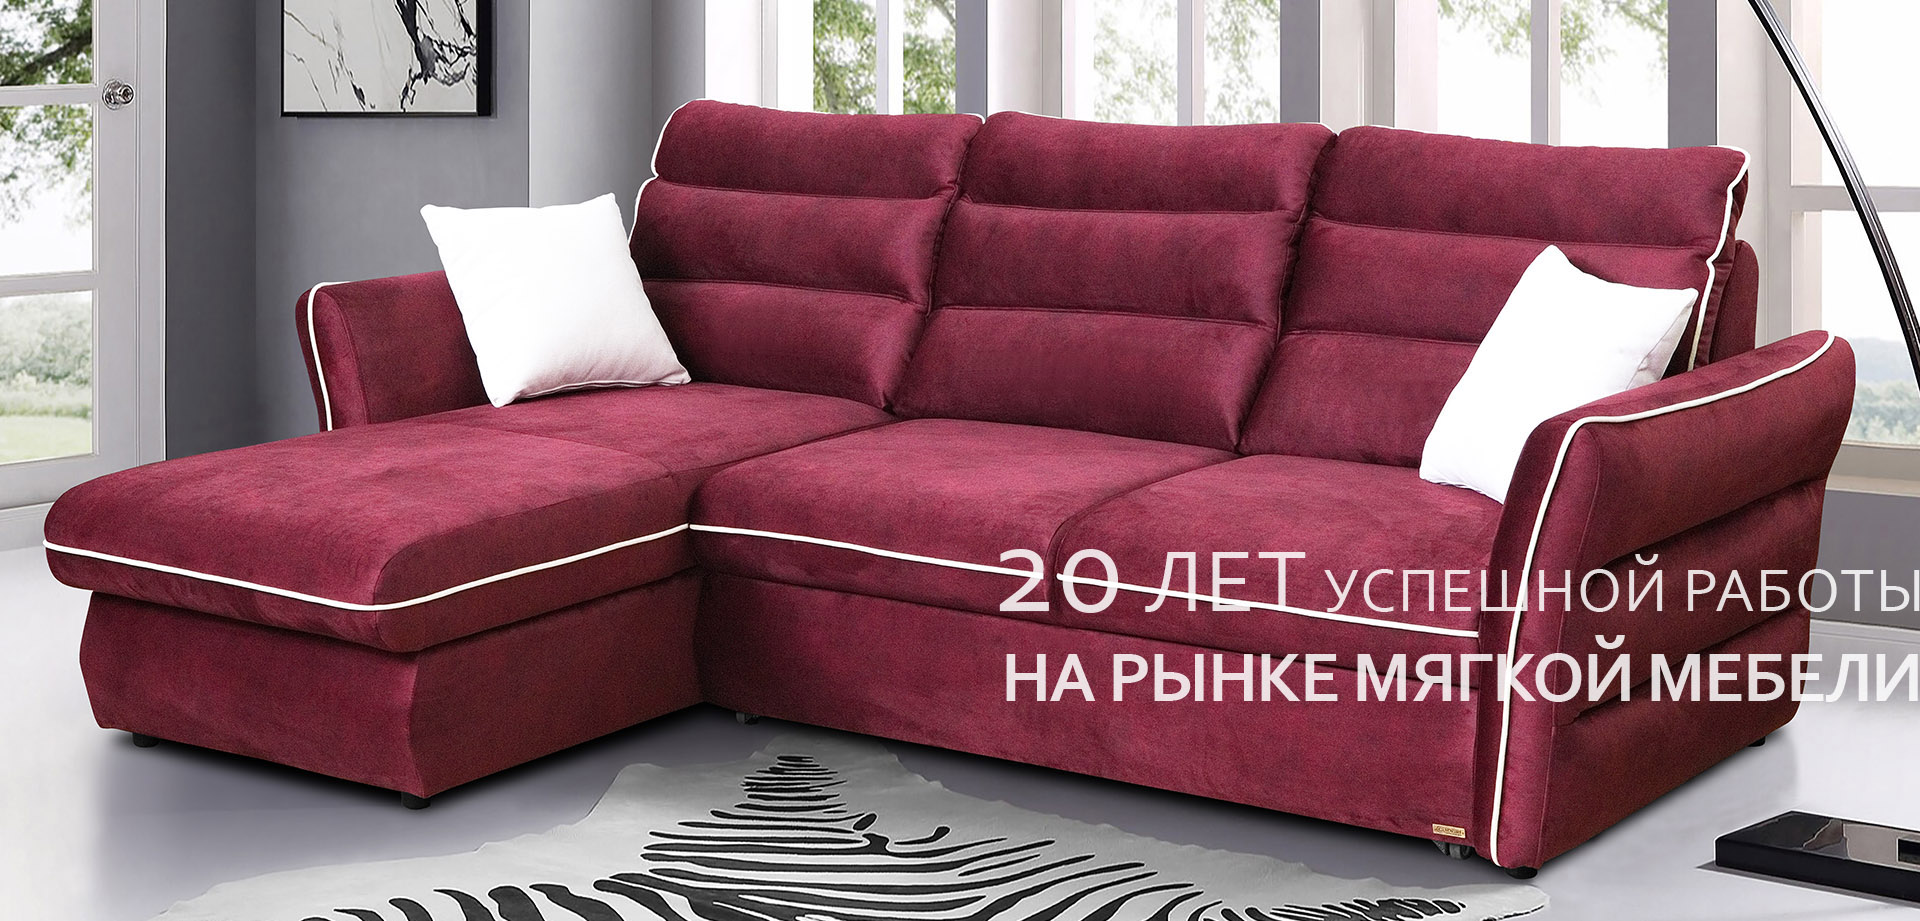 Фабрики по производству мягкой мебели в россии